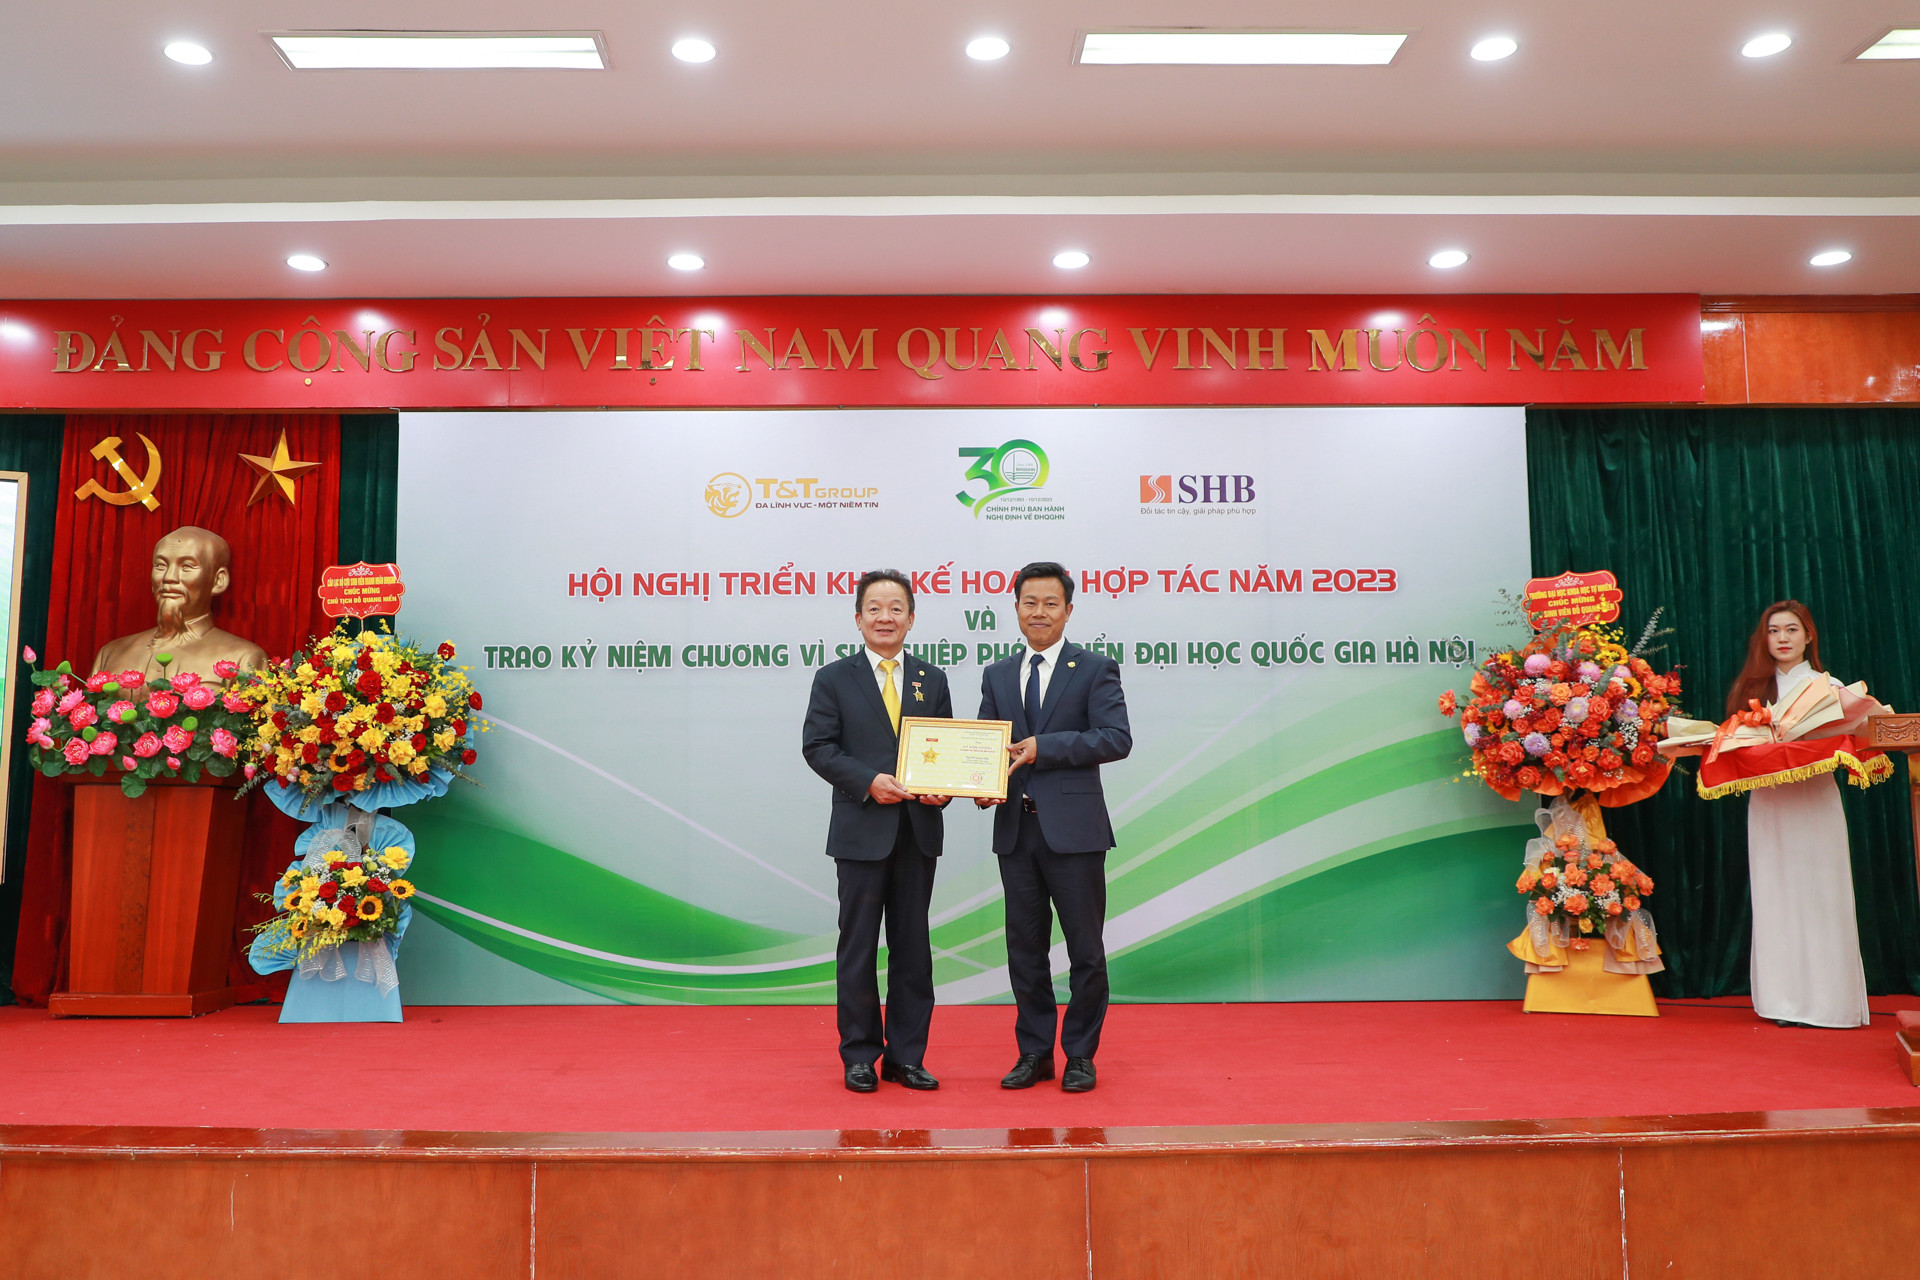 Doanh nhân Đỗ Quang Hiển nhận kỷ niệm chương vì sự nghiệp phát triển Đại học Quốc gia Hà Nội - Ảnh 1.